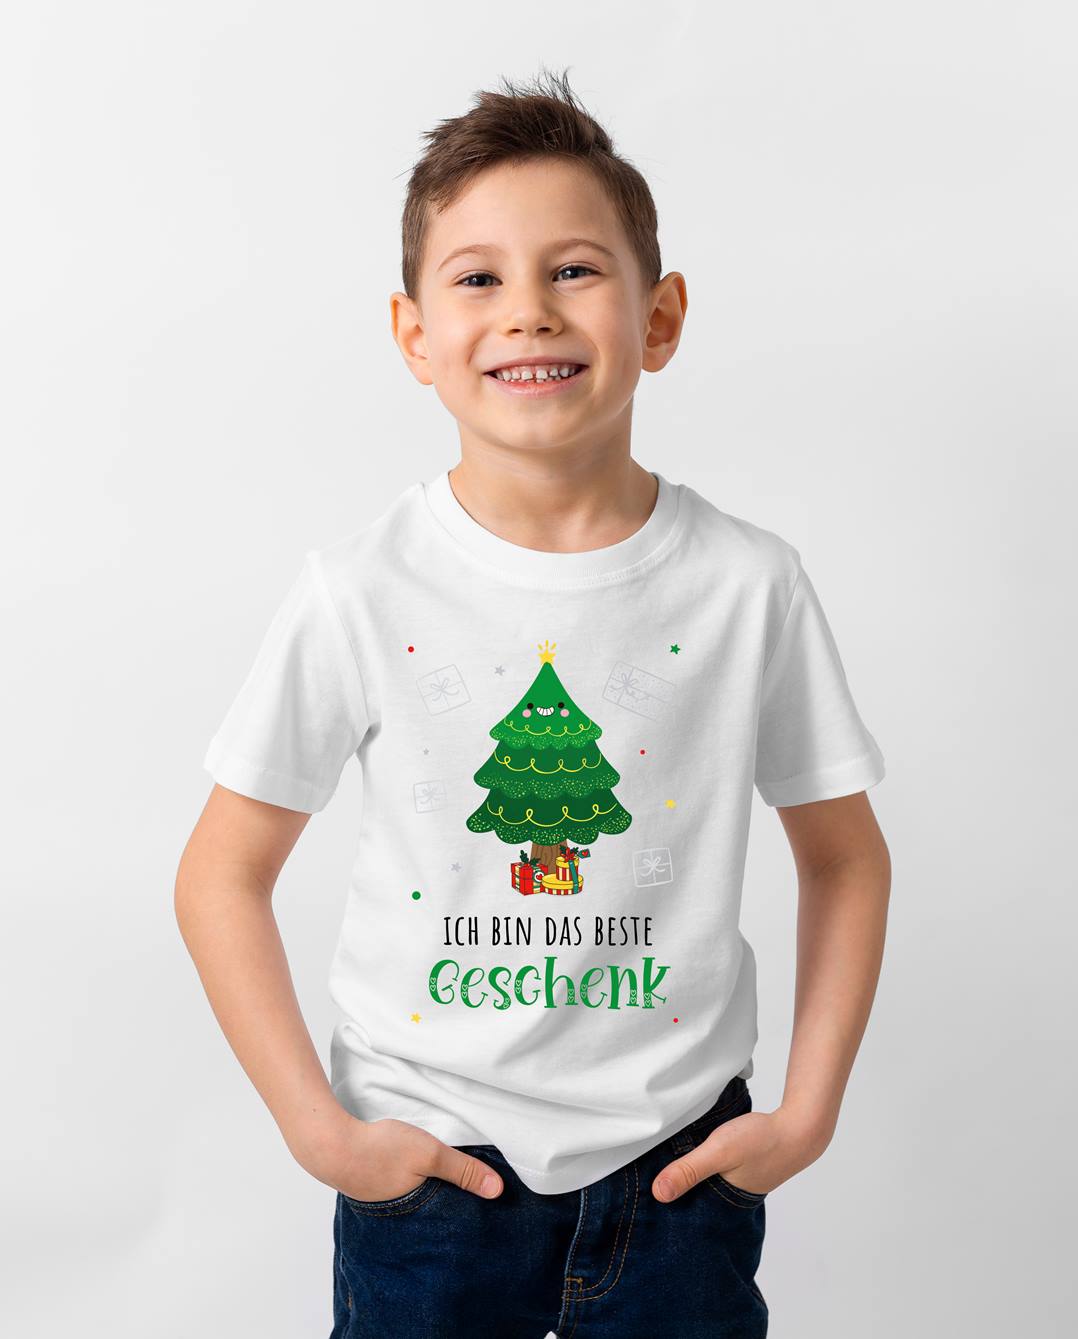 Bild: T-Shirt Kinder - Ich bin das beste Geschenk (Weihnachtsedition) Geschenkidee